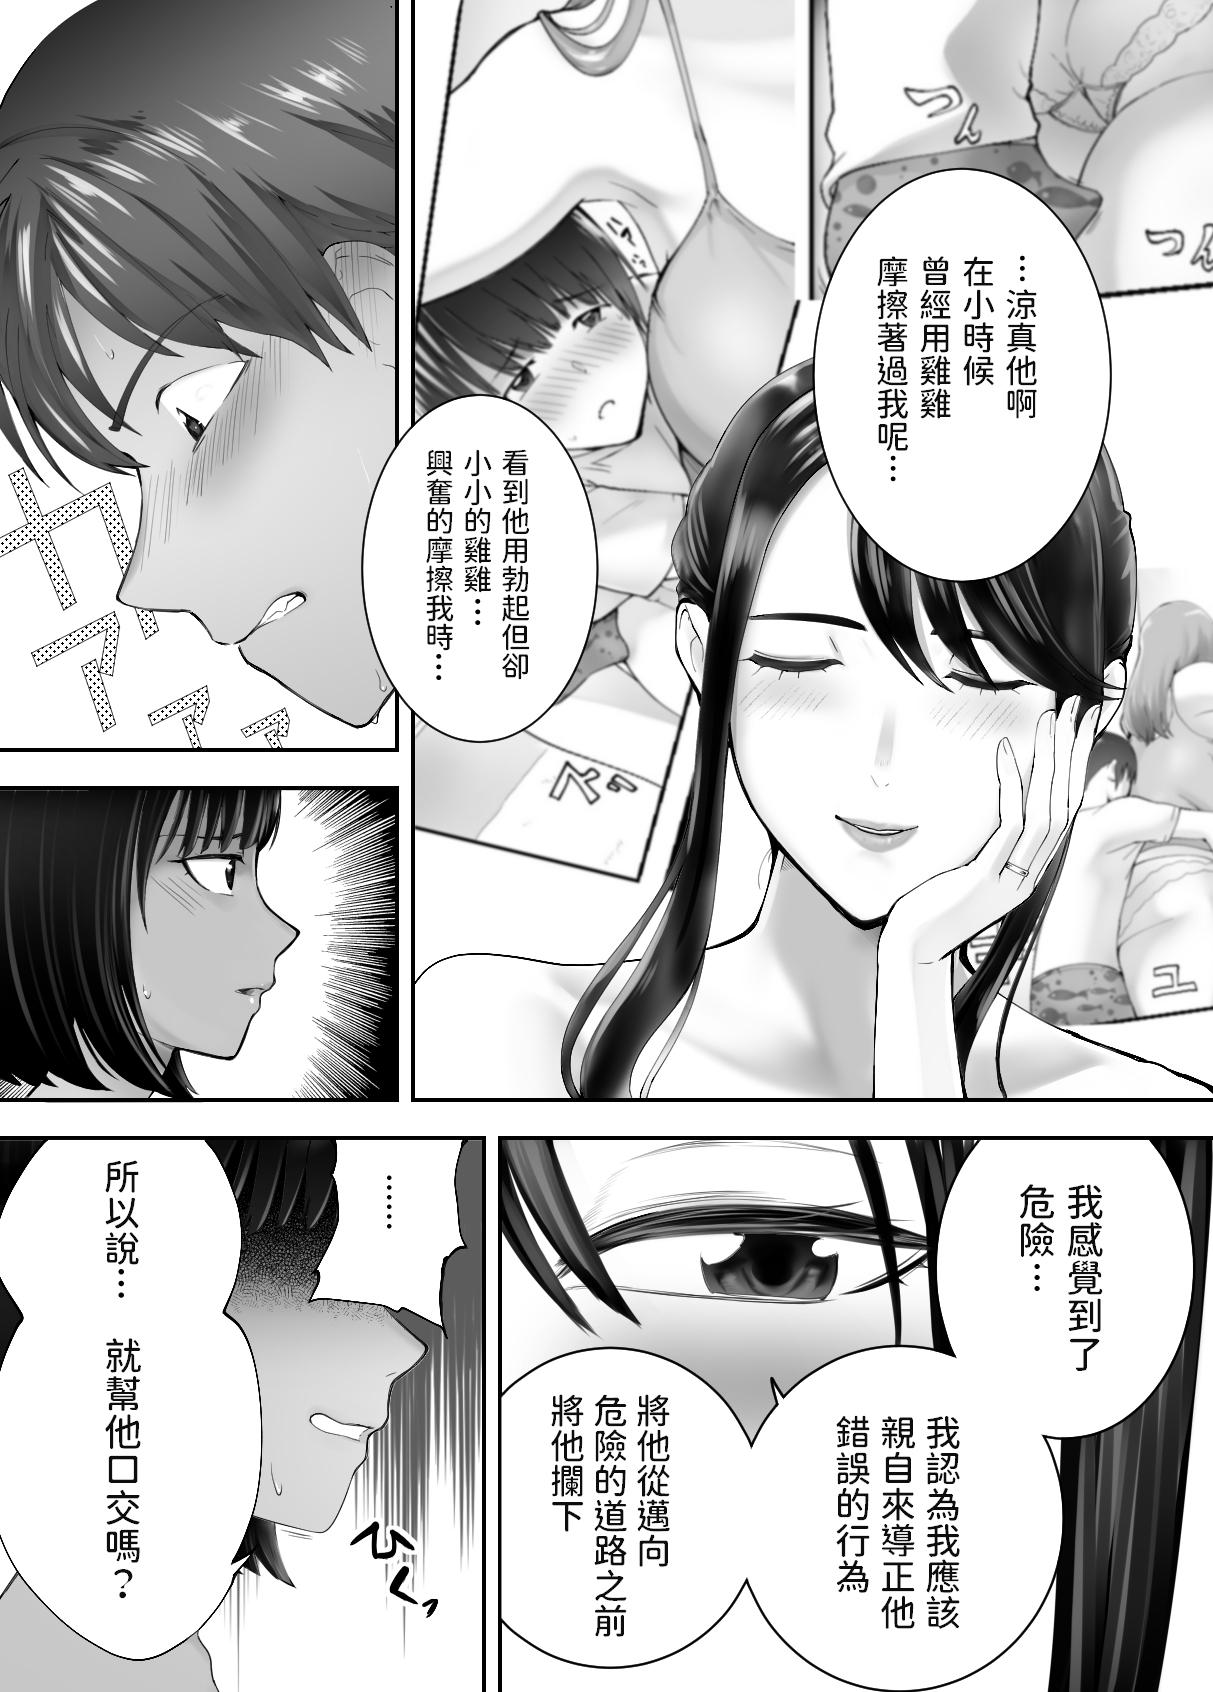 Cums Osananajimi ga Mama to Yatte imasu. 7 - Original Strange - Page 6